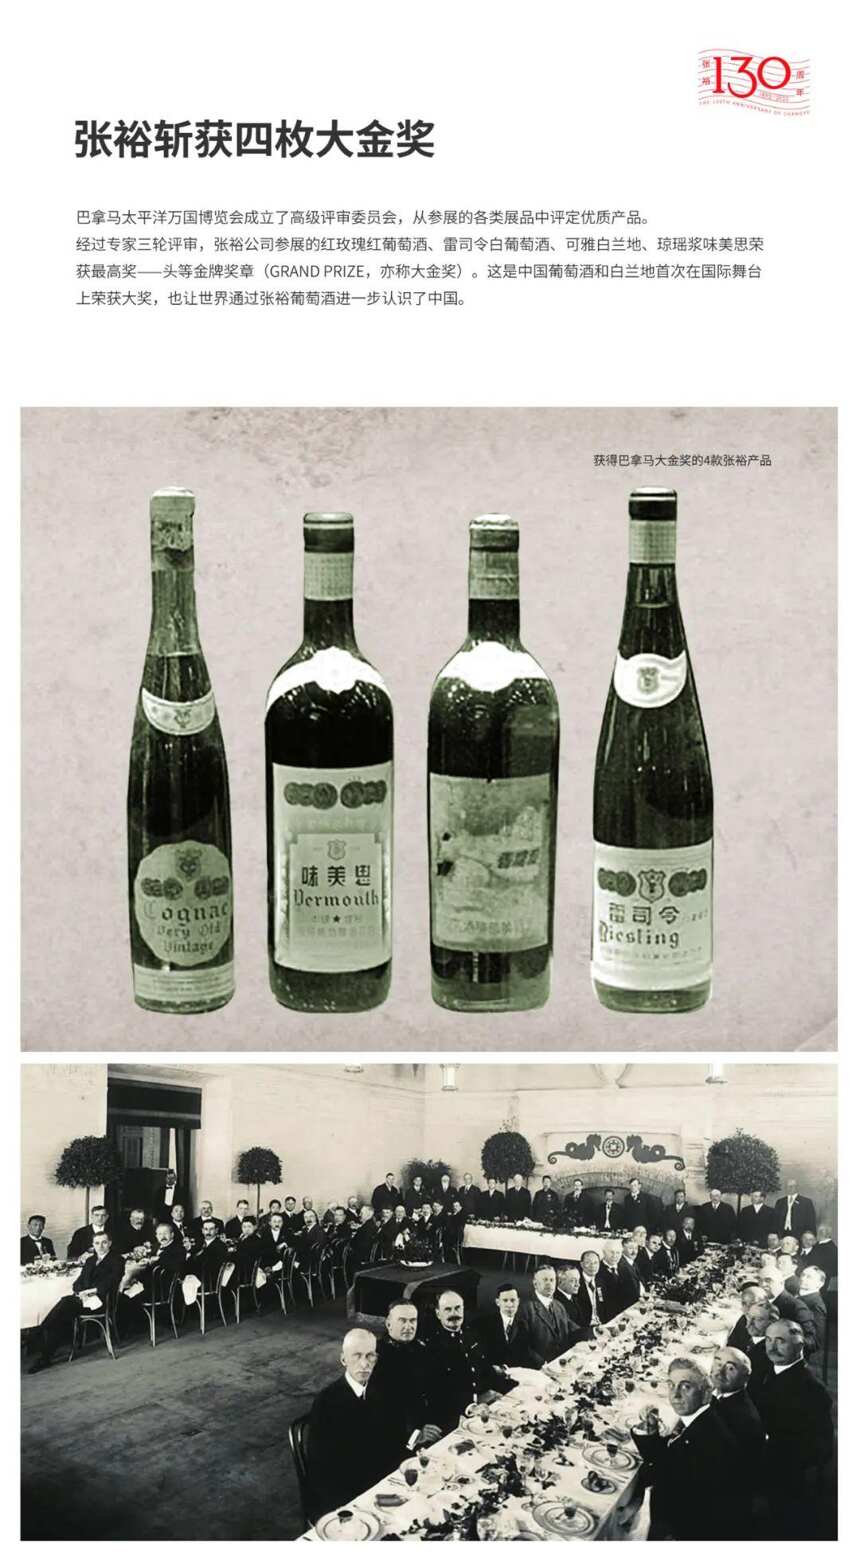 中国葡萄酒时光艺术展开启 共赴张裕130年国红传奇